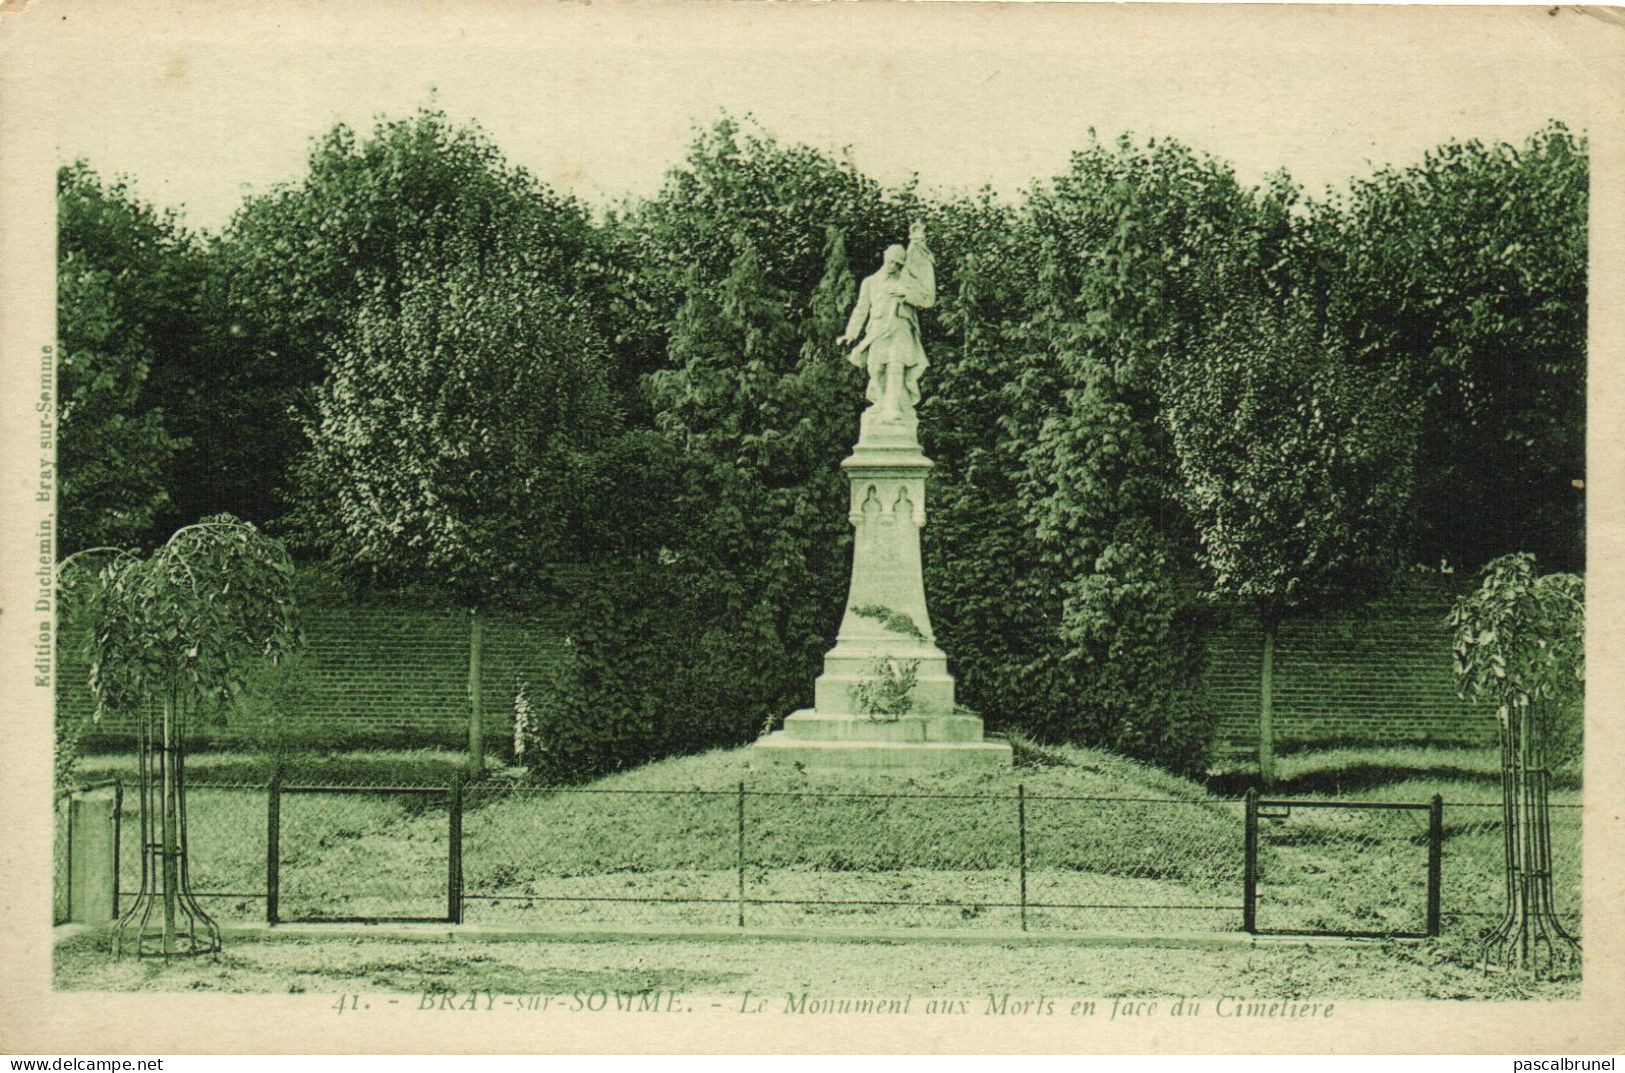 BRAY SUR SOMME - LE MONUMENT AUX MORTS EN FACE DU CIMETIERE - Bray Sur Somme